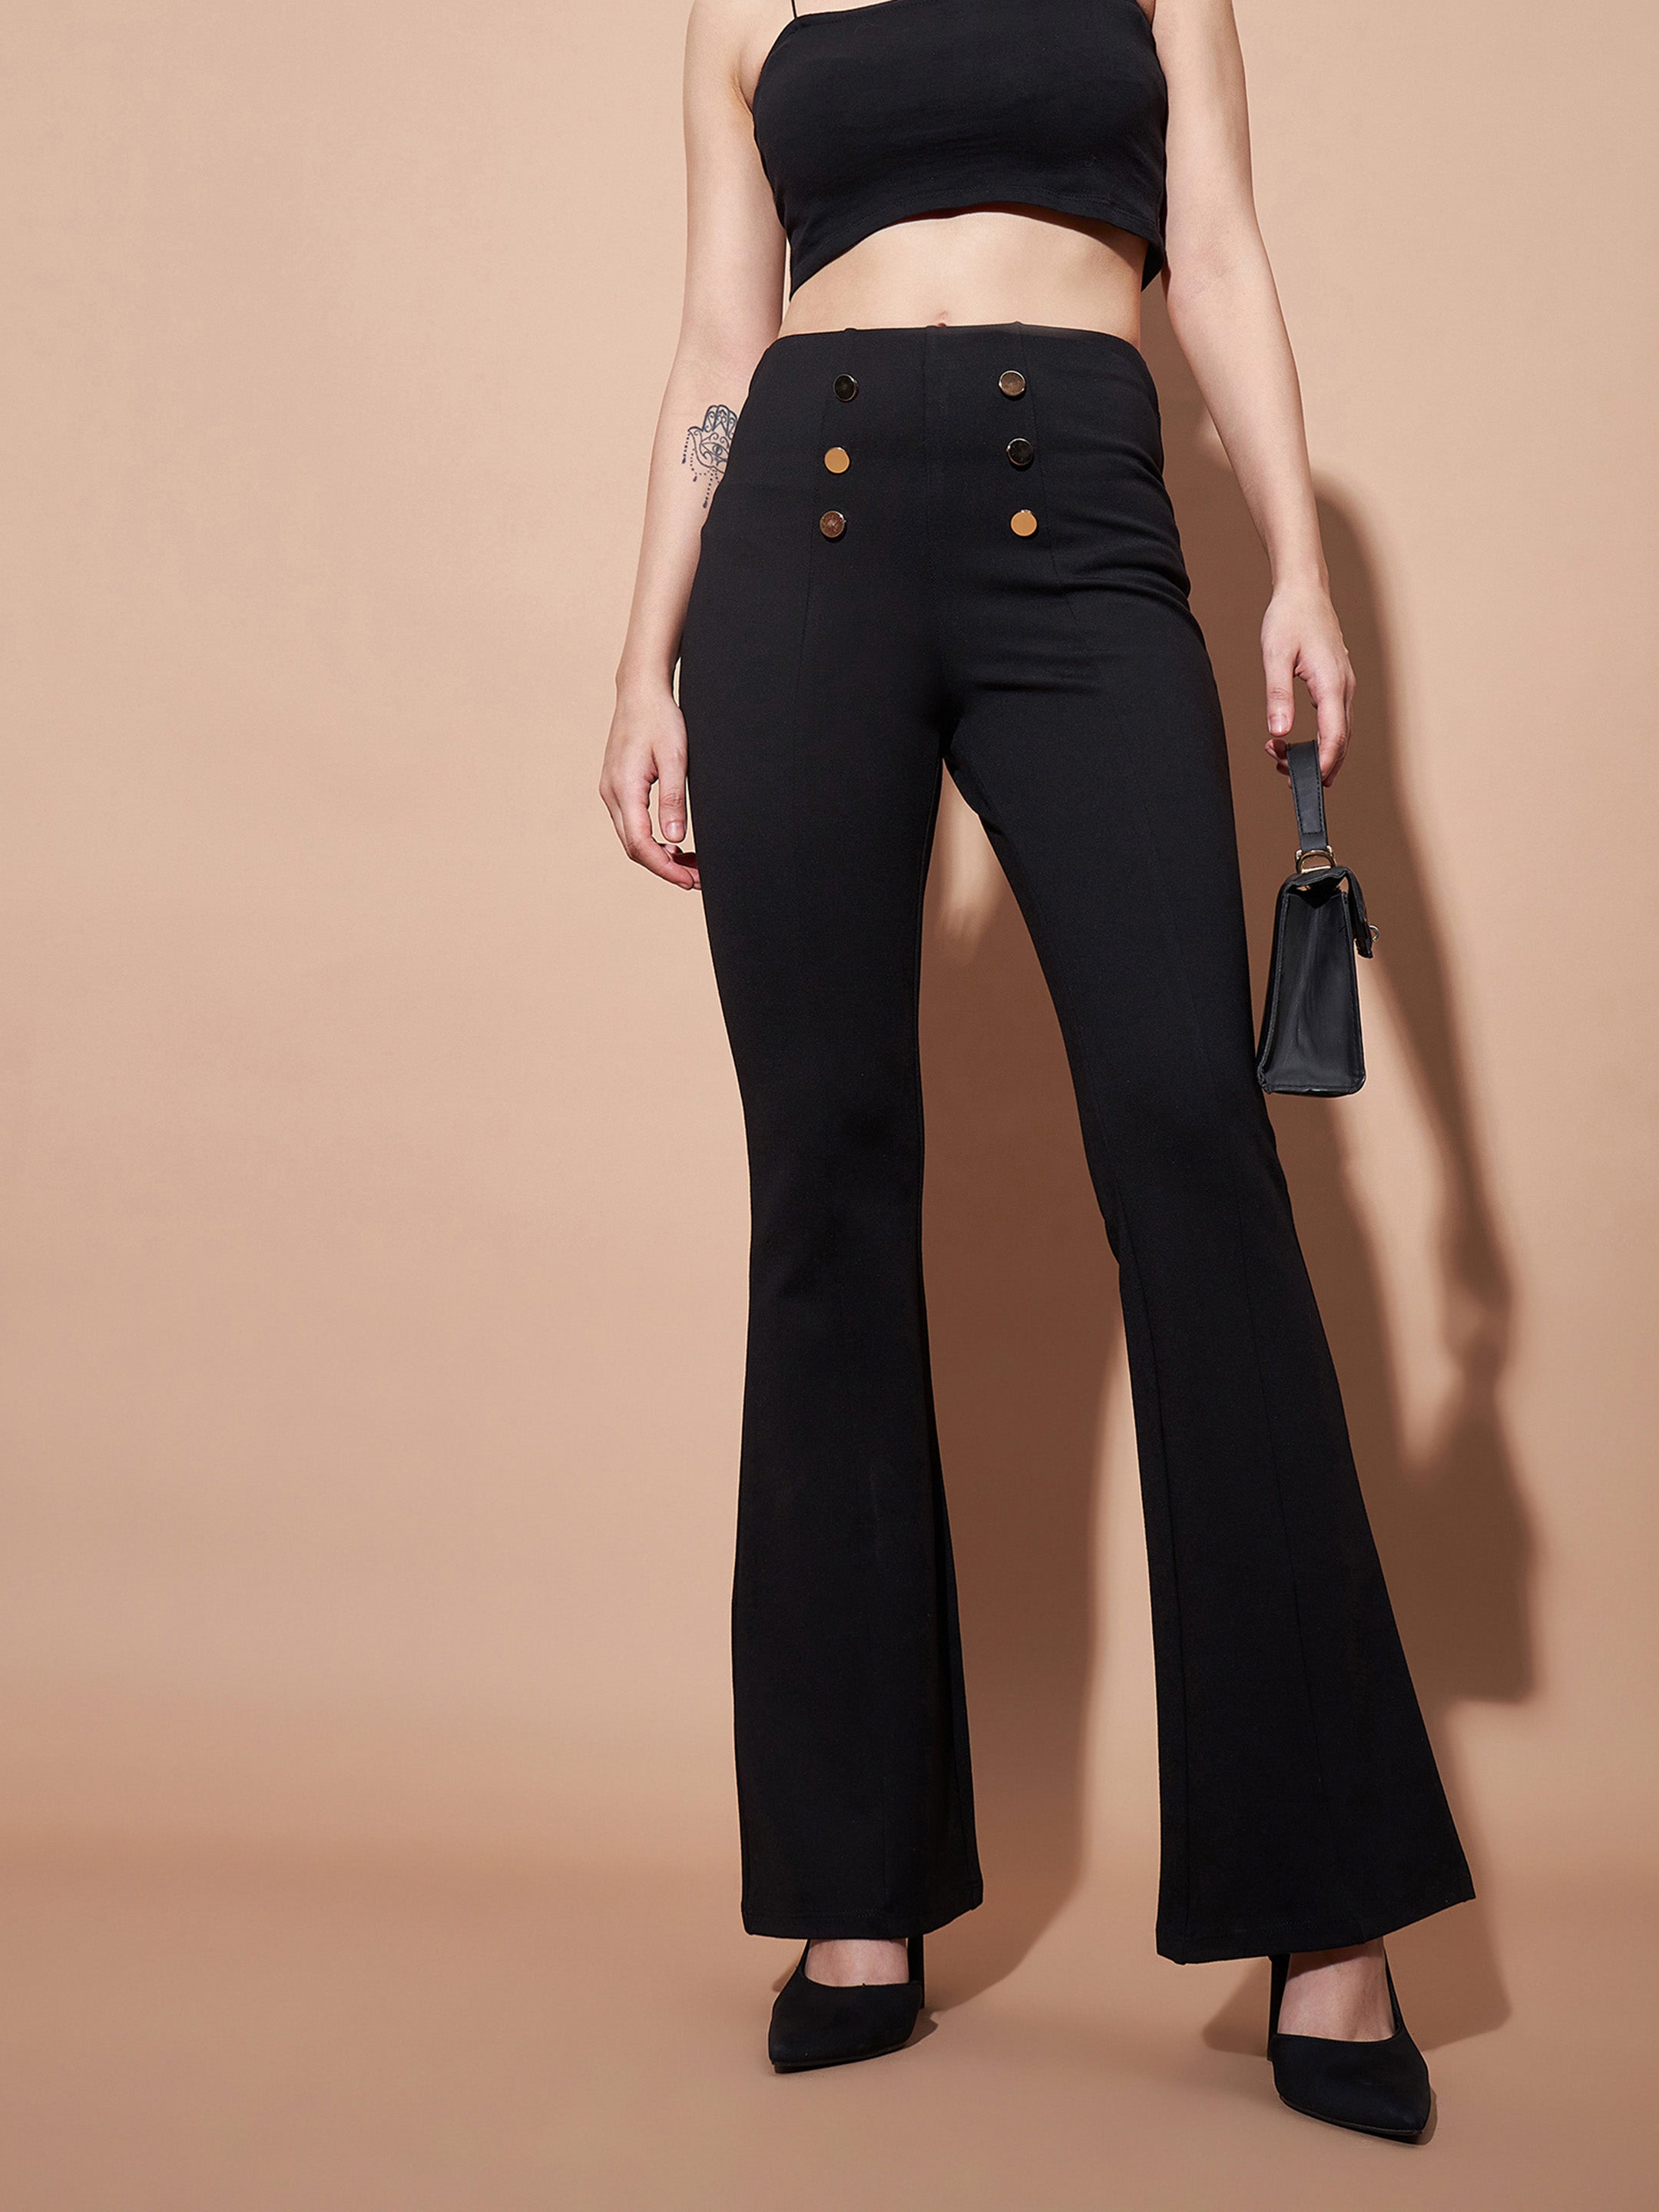 Women's Black High Waist Gold Show Buttons Pants - Lyush – Trendia